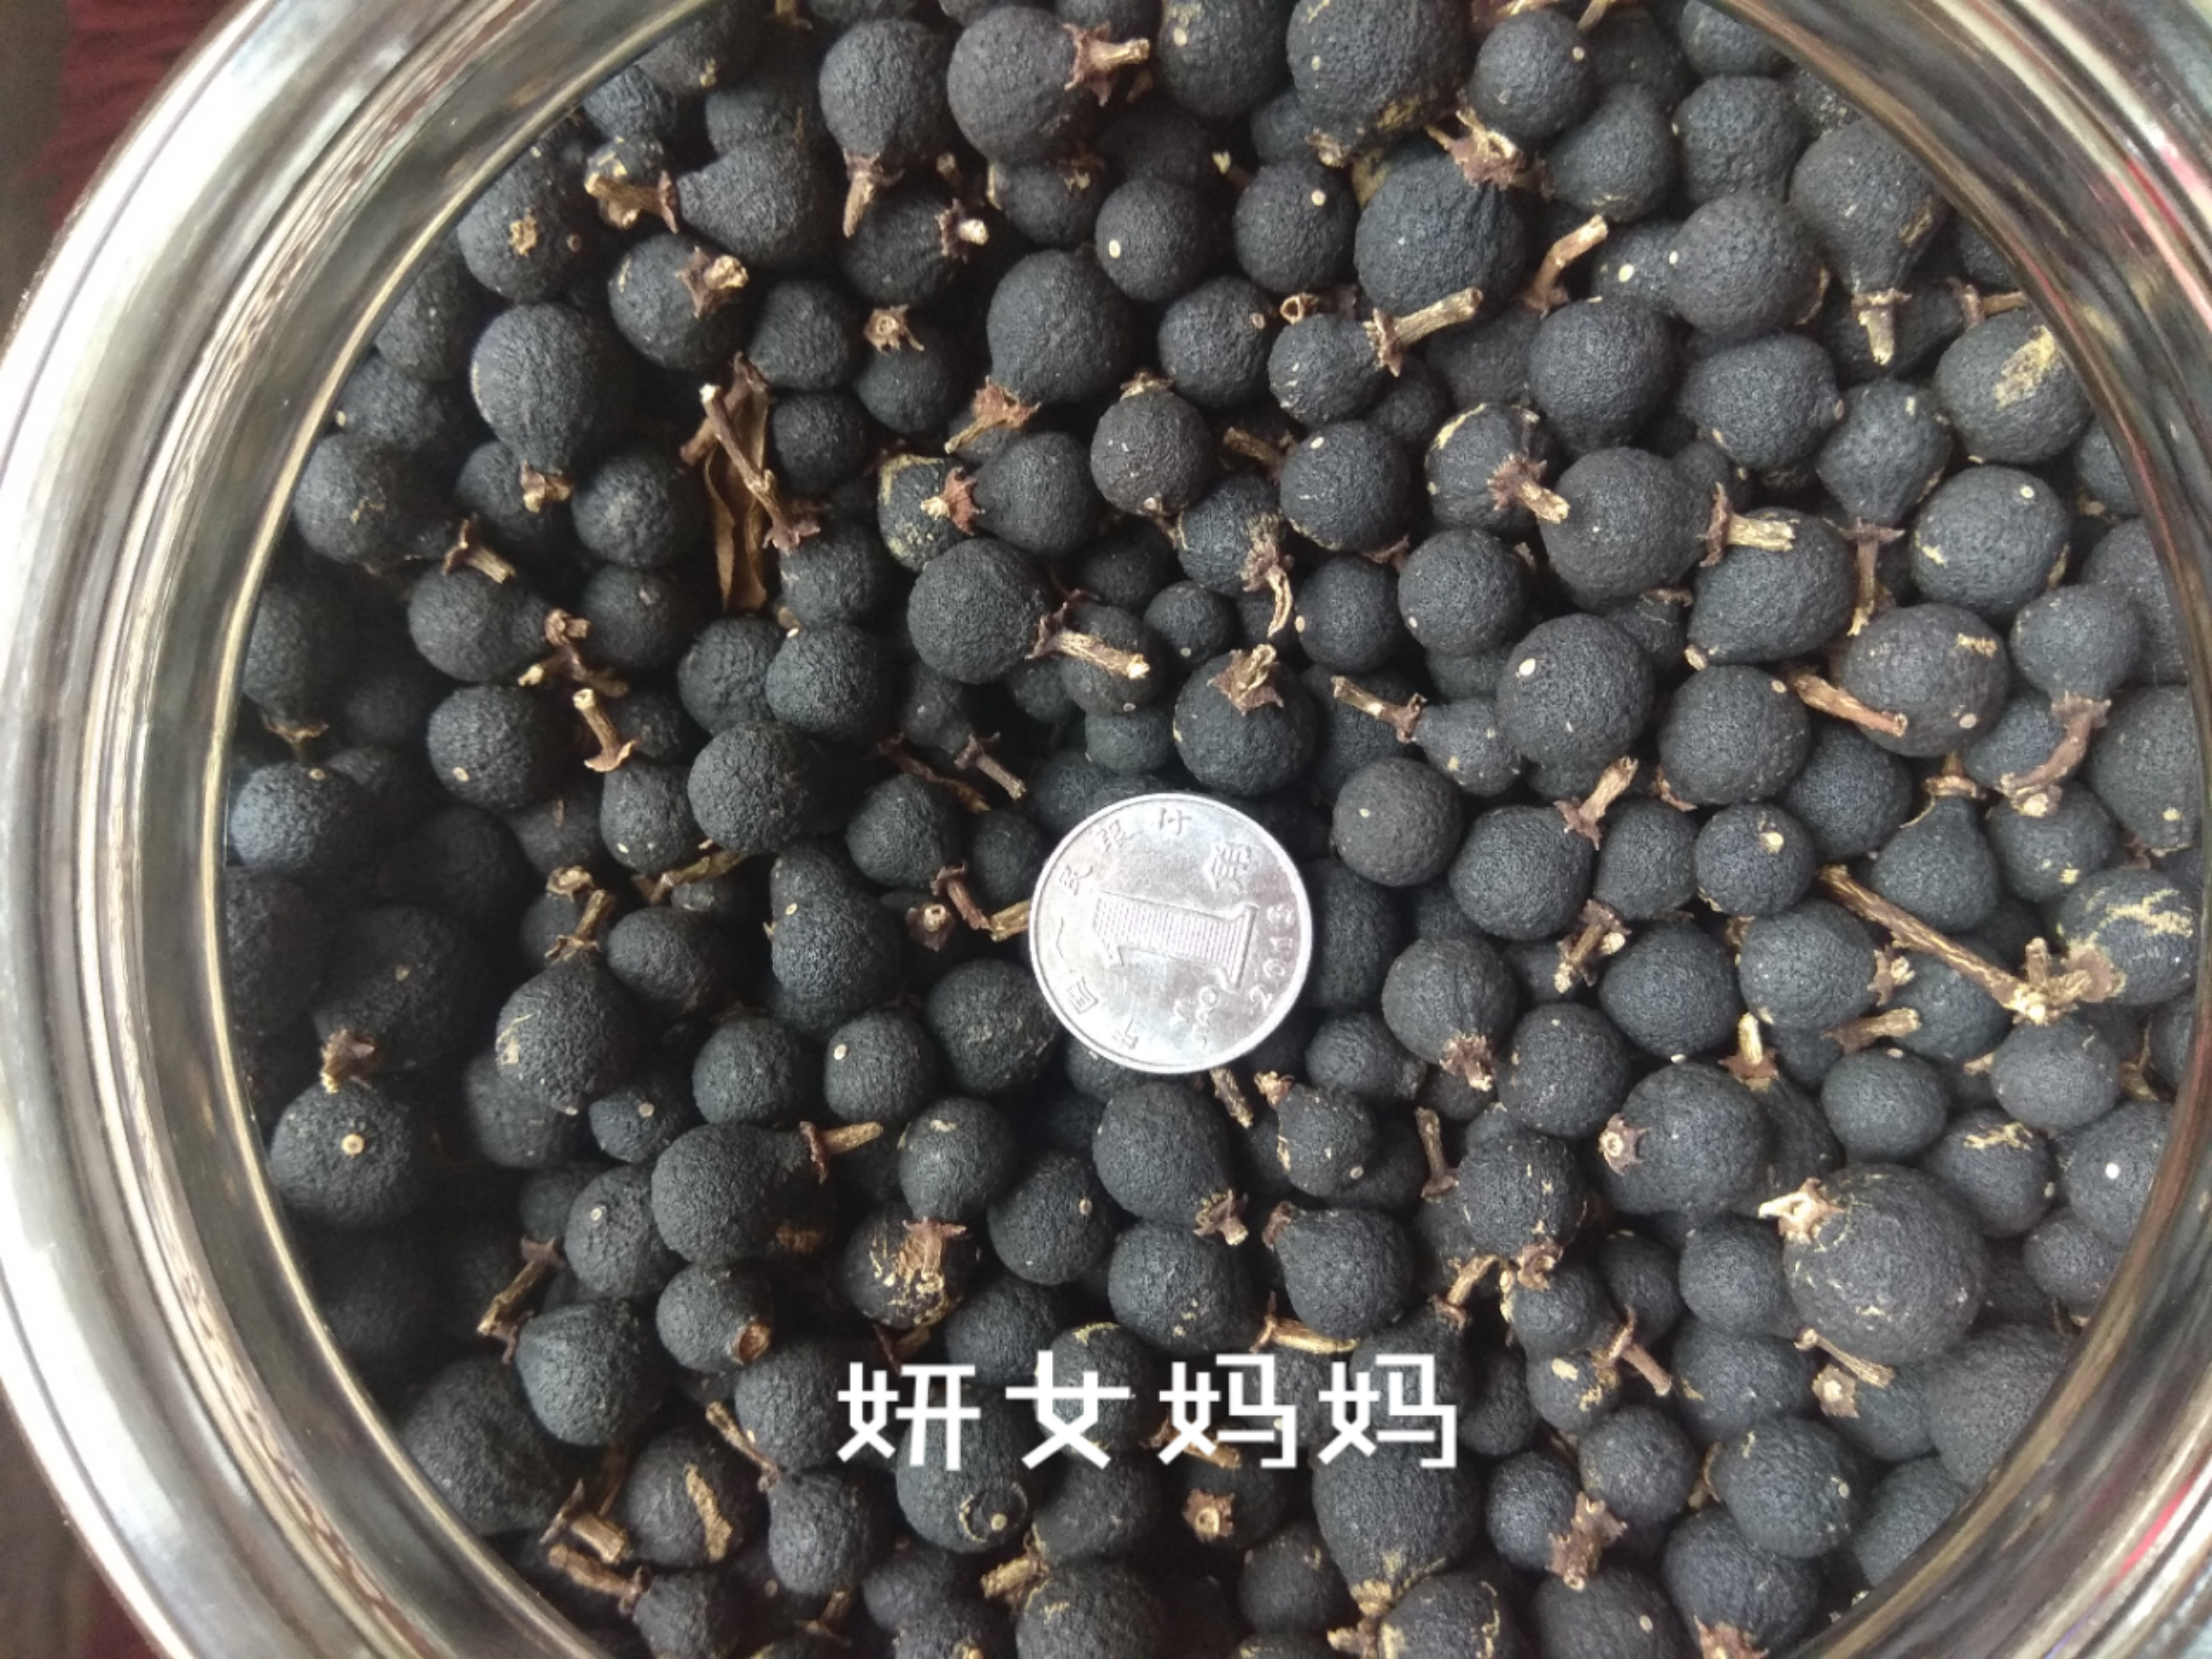 【茶枝柑胎果批发】茶枝柑胎果 价格150元\/斤